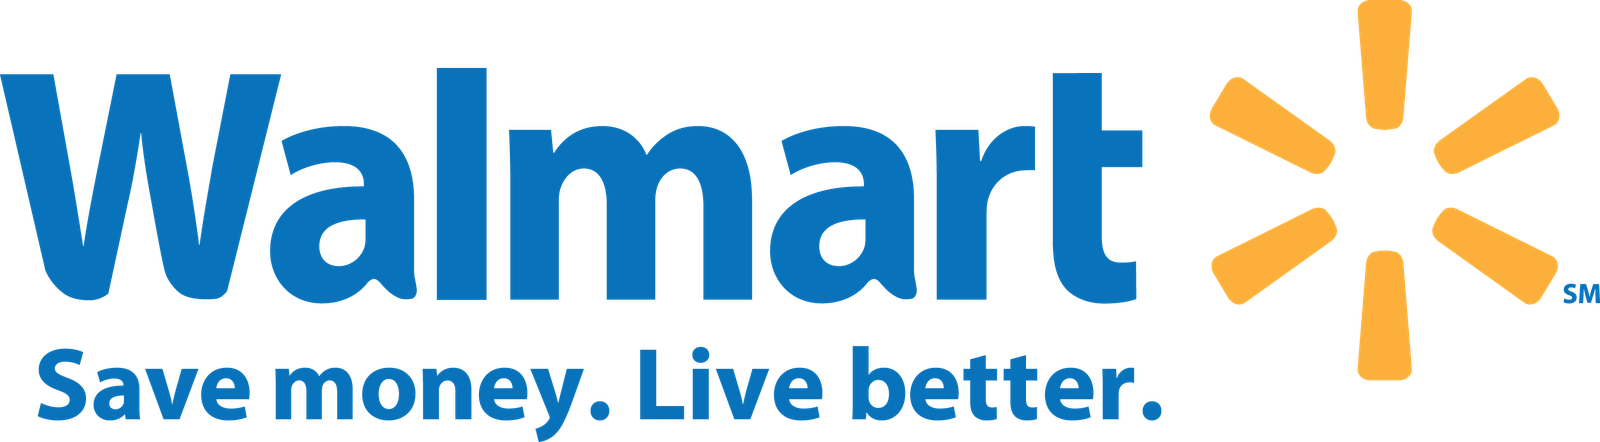 Wal Mart Logos